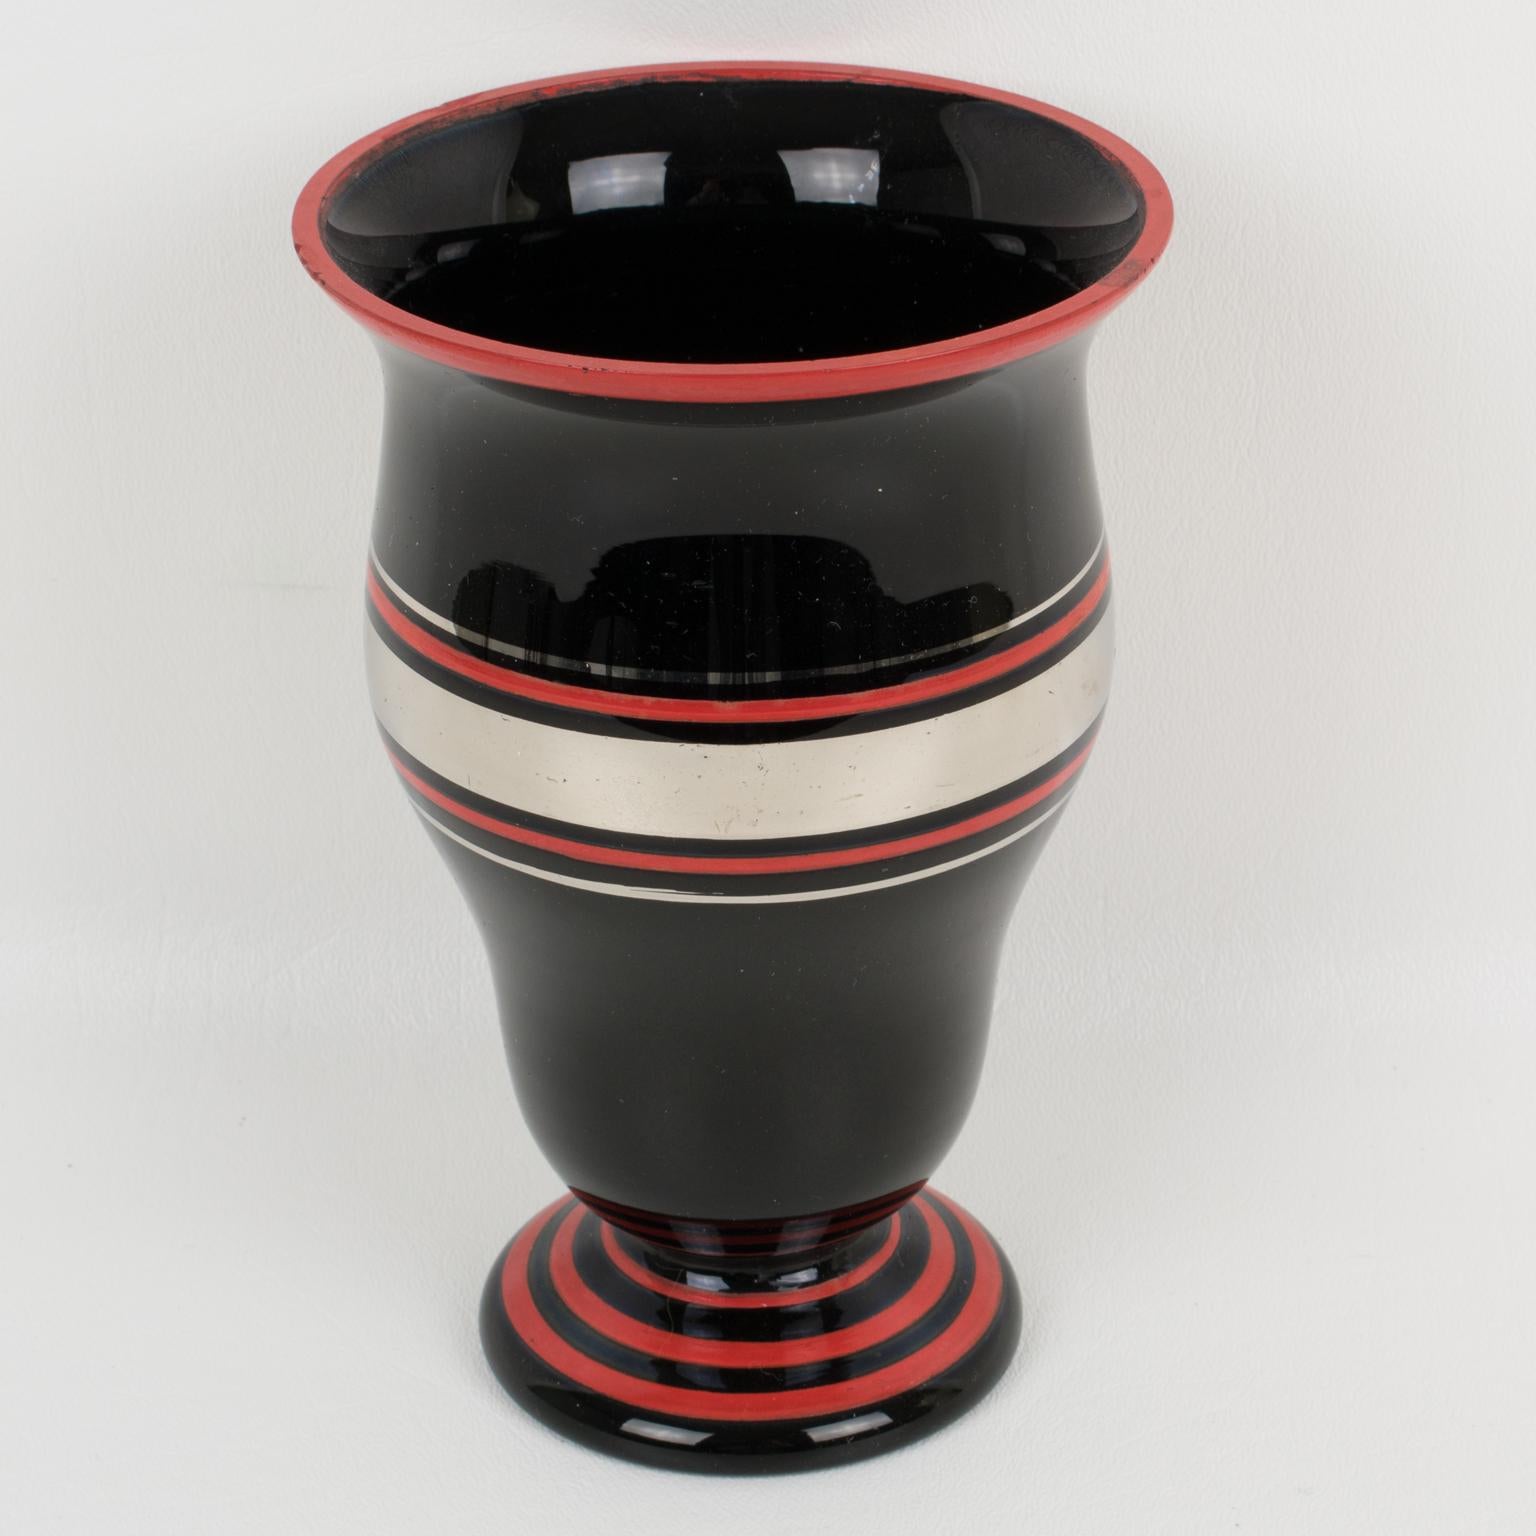 Diese hübsche schwarze Glasvase aus den 1930er Jahren im französischen Art déco-Stil ist mit einer silbernen und roten Einlage mit geometrischem Muster verziert. Es gibt keine sichtbare Herstellermarke.
Schöner Originalzustand mit einigen